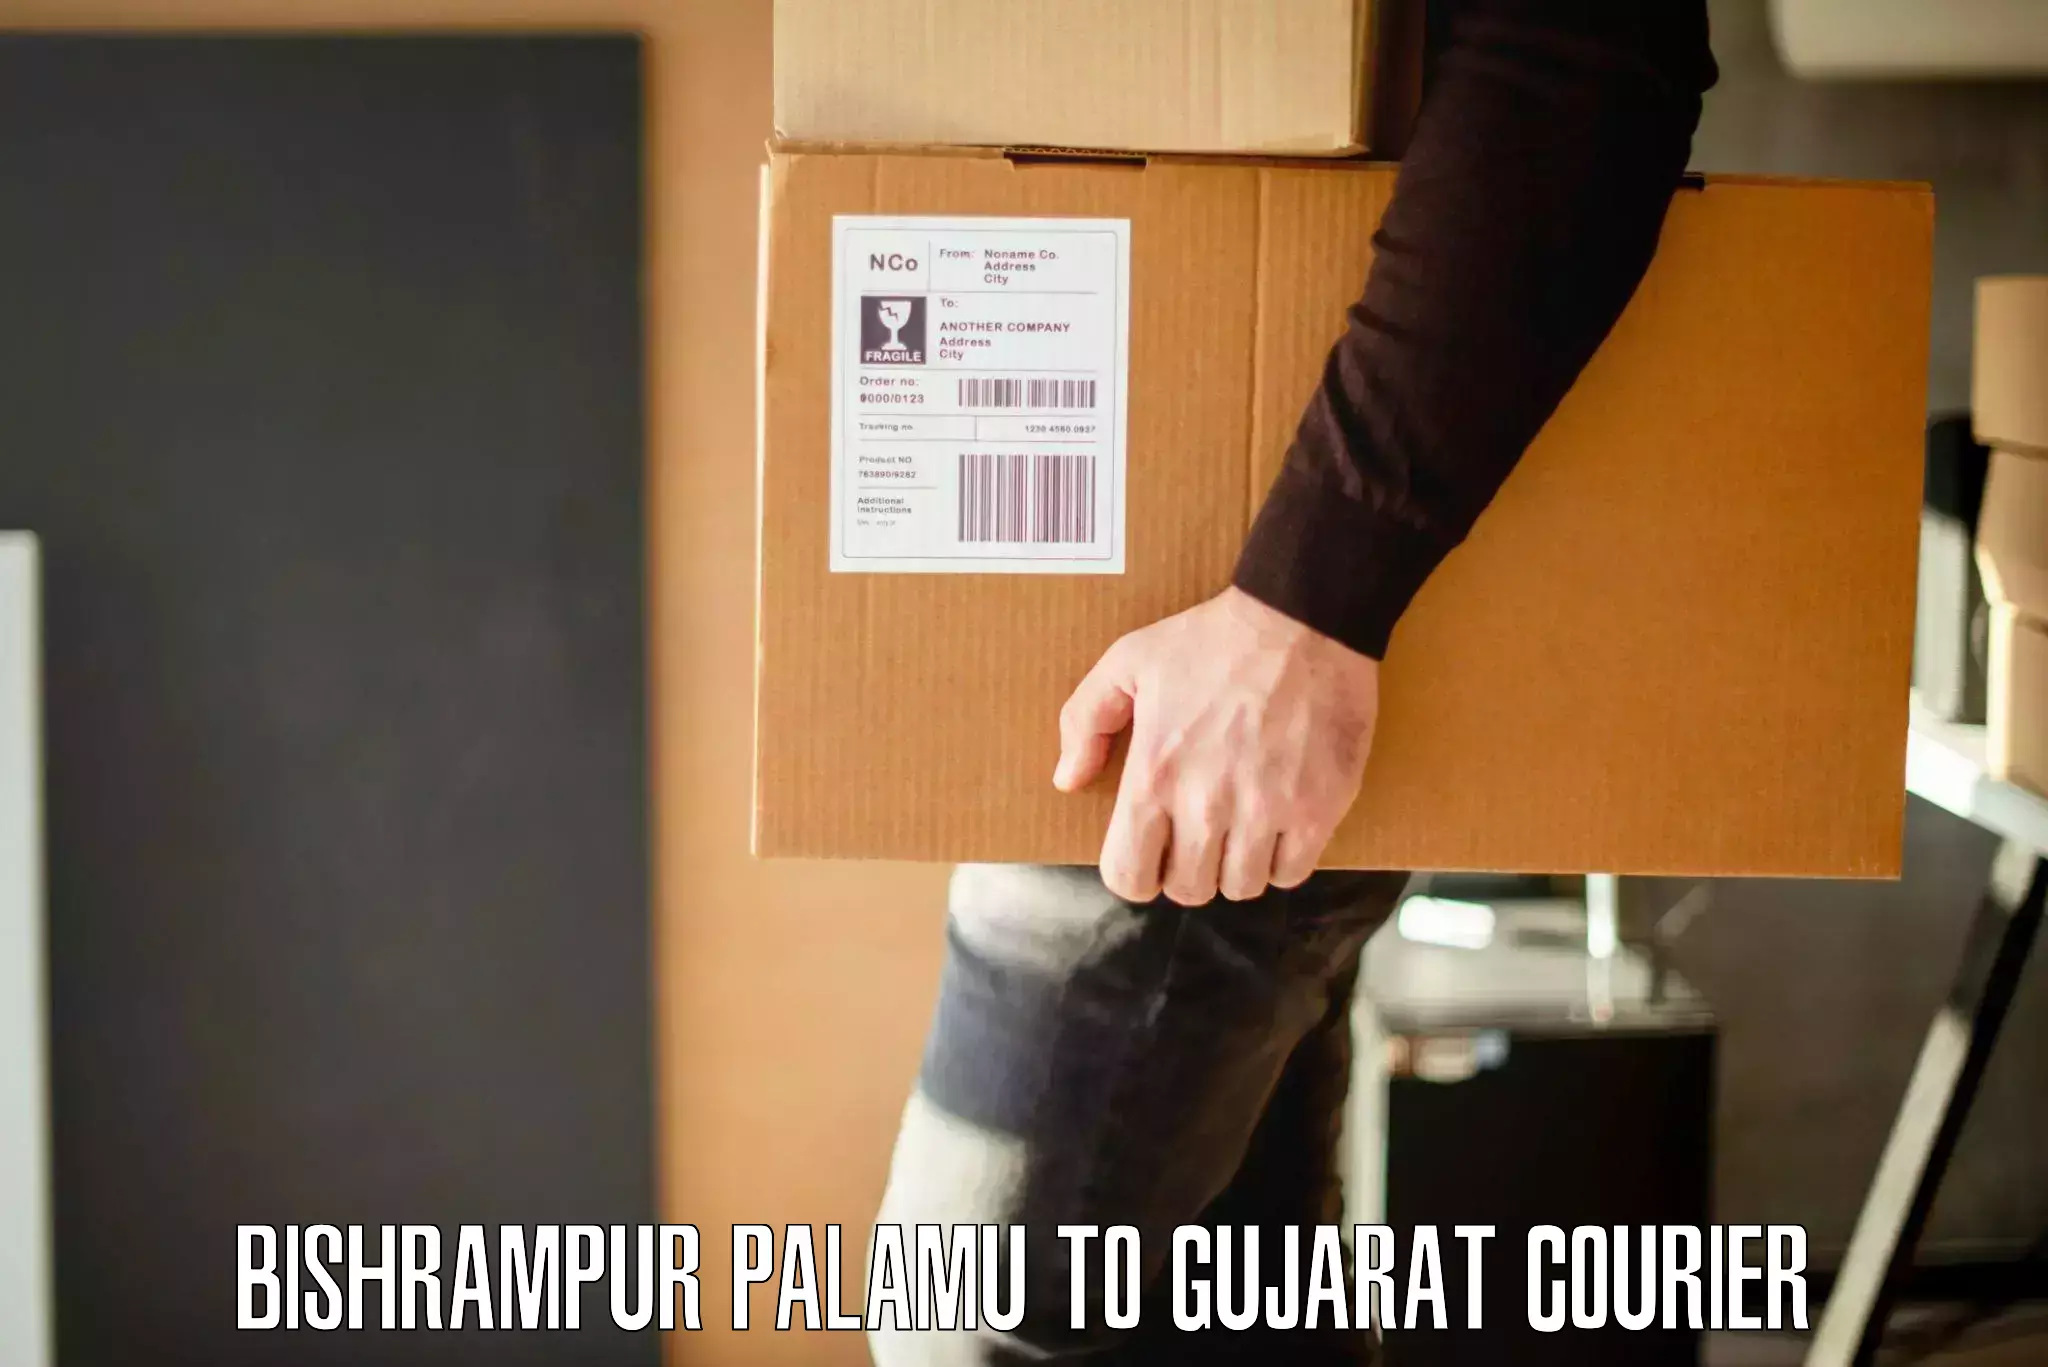 Smooth relocation services Bishrampur Palamu to Gujarat